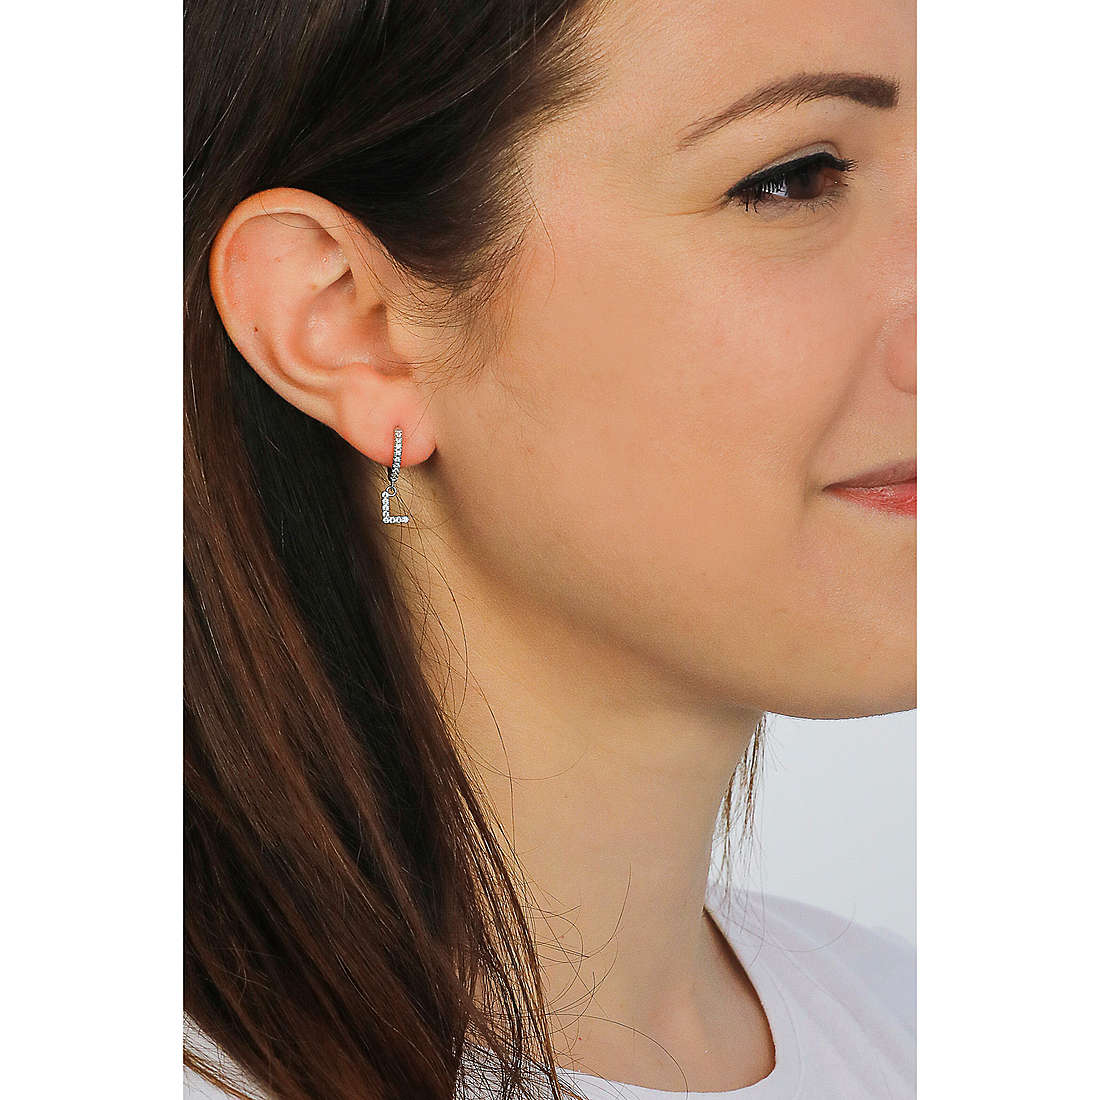 Rebecca earrings Myn woman SWNOAL12 wearing